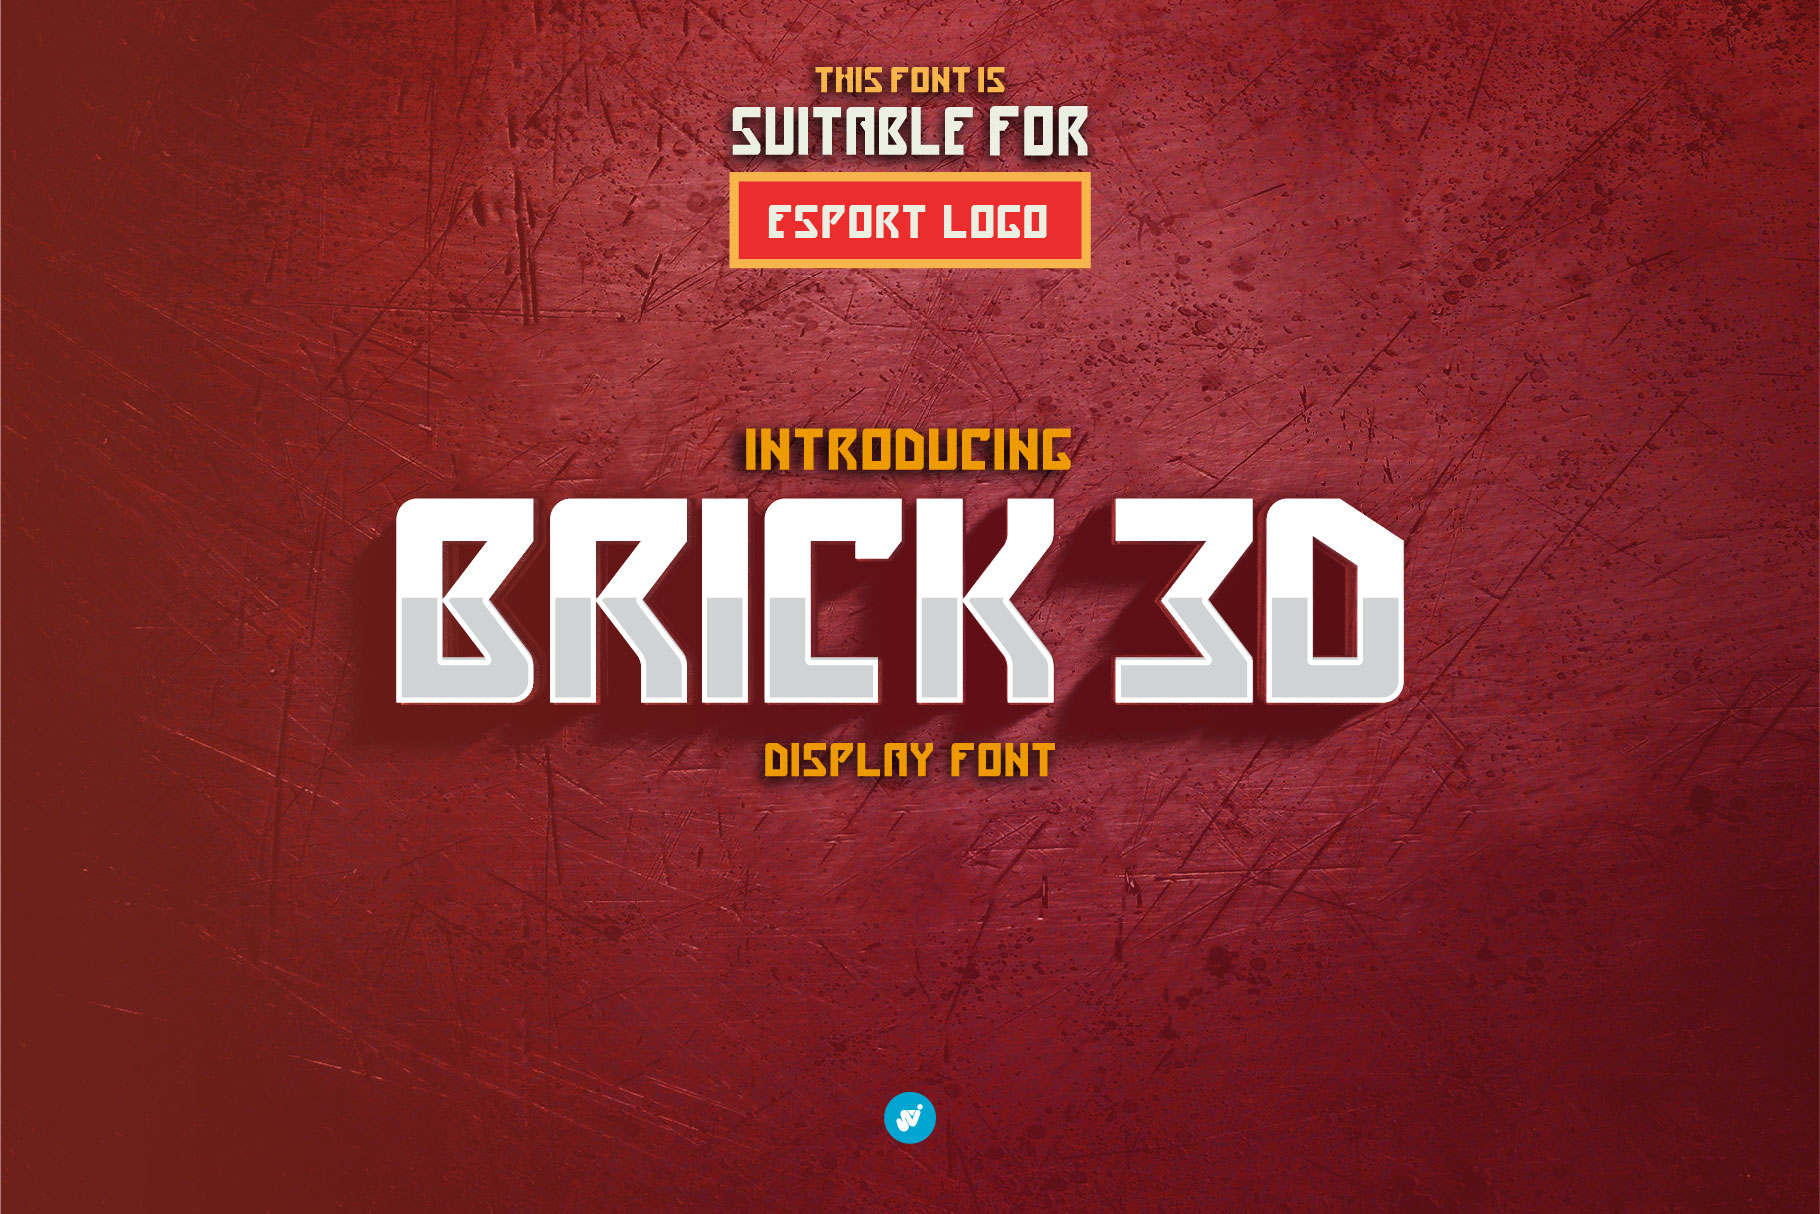 Brick 3D